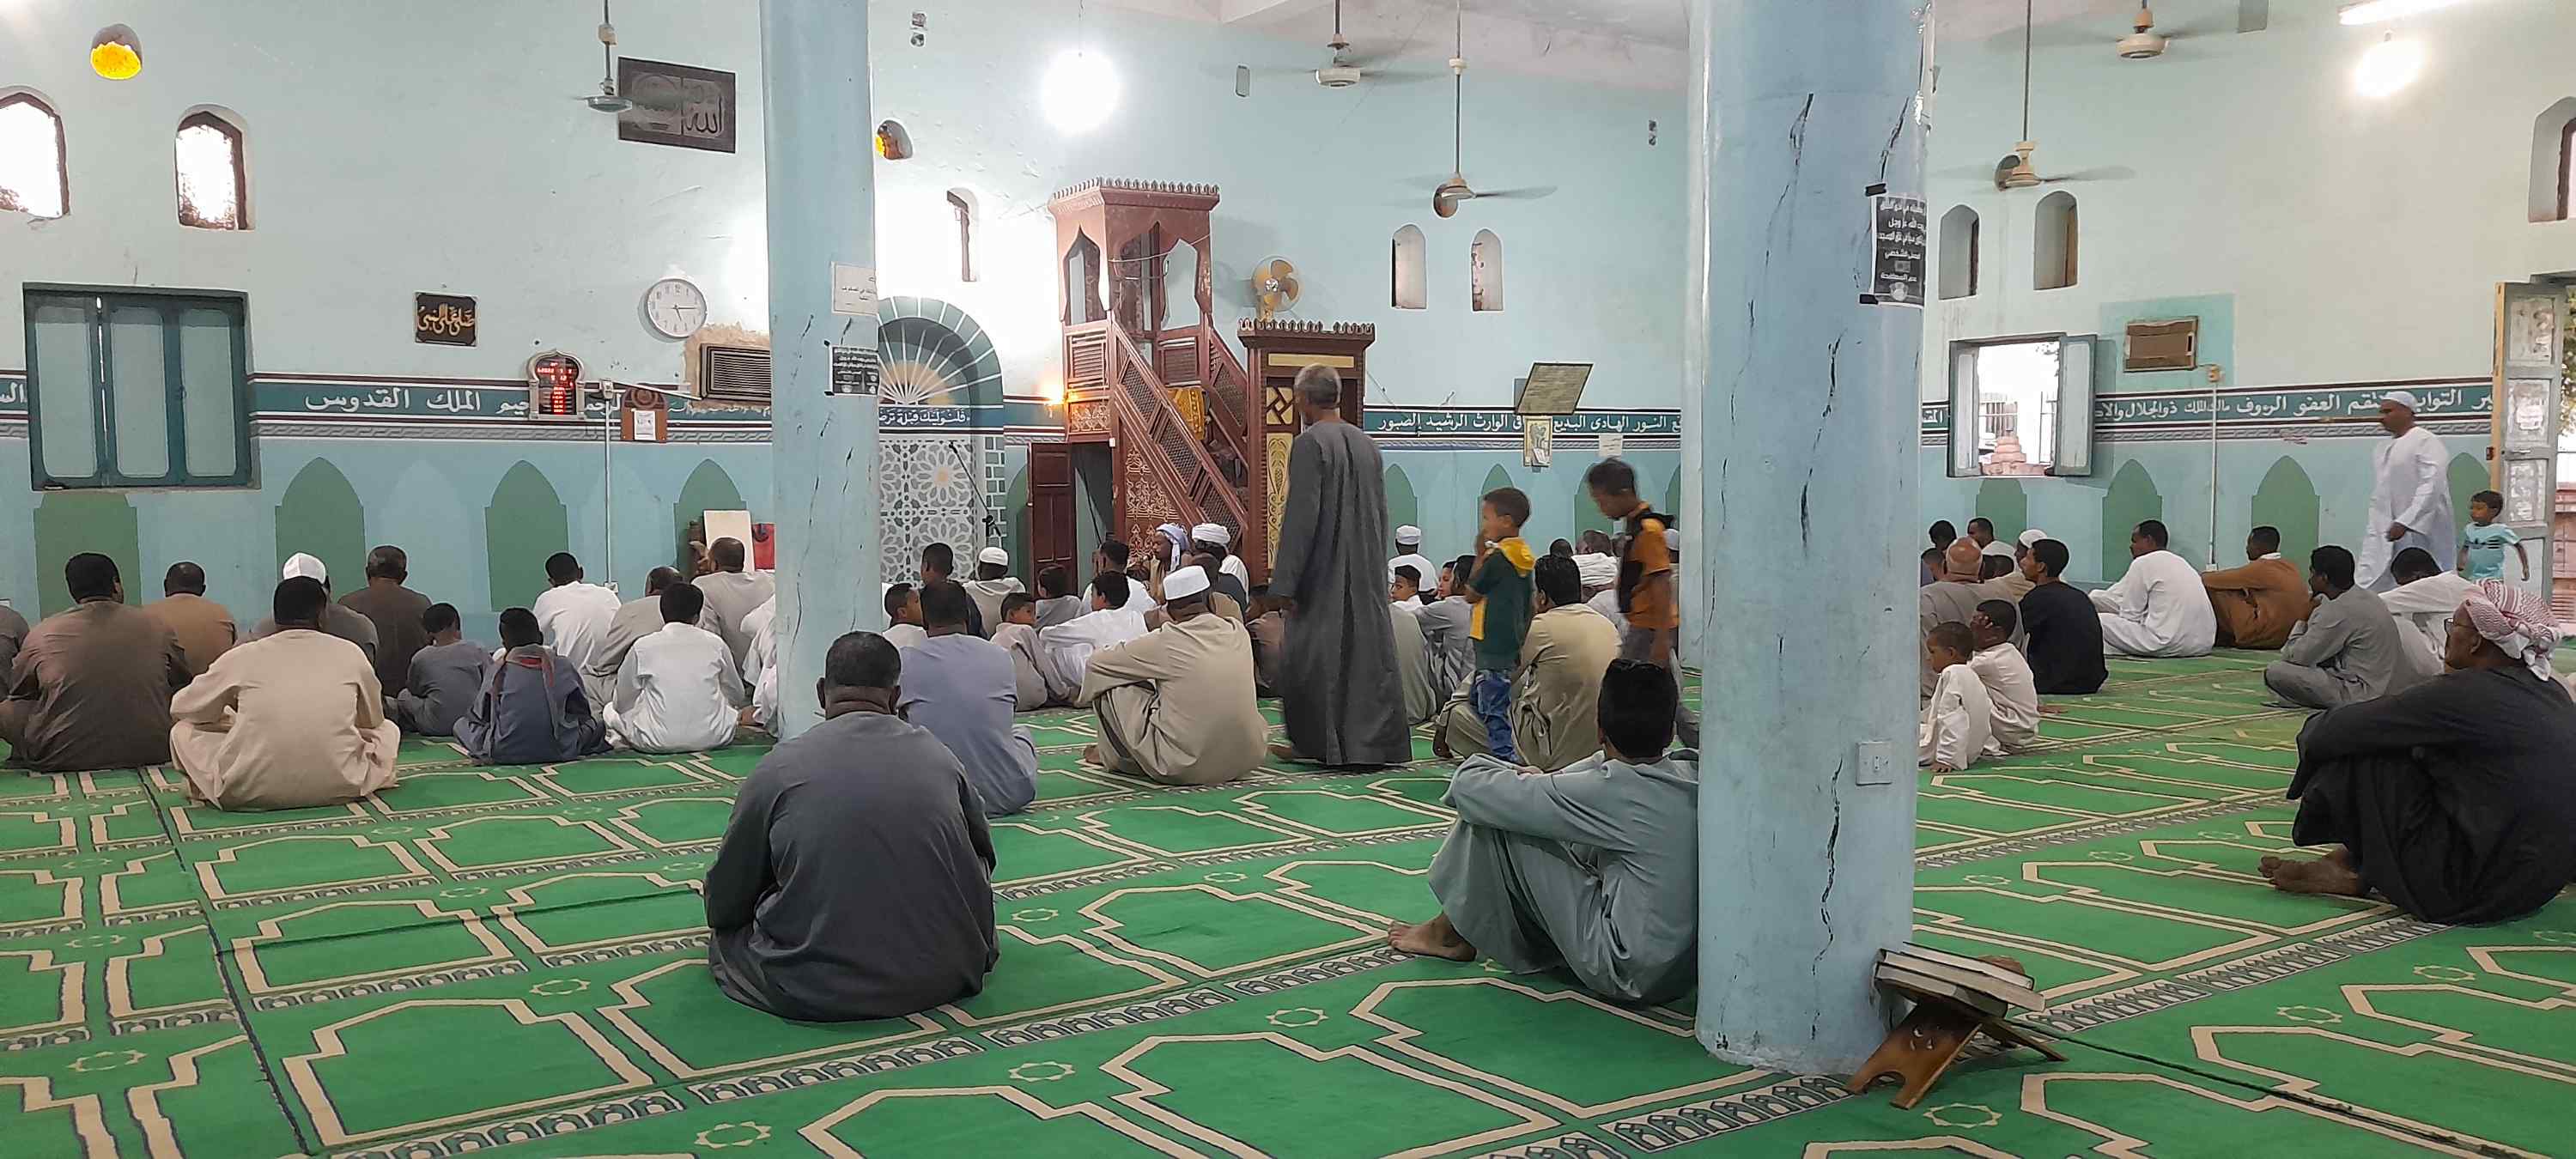 الله أكبر كبيرا.. تكبيرات العيد داخل مساجد أسوان فى عيد الأضحى المبارك (3)